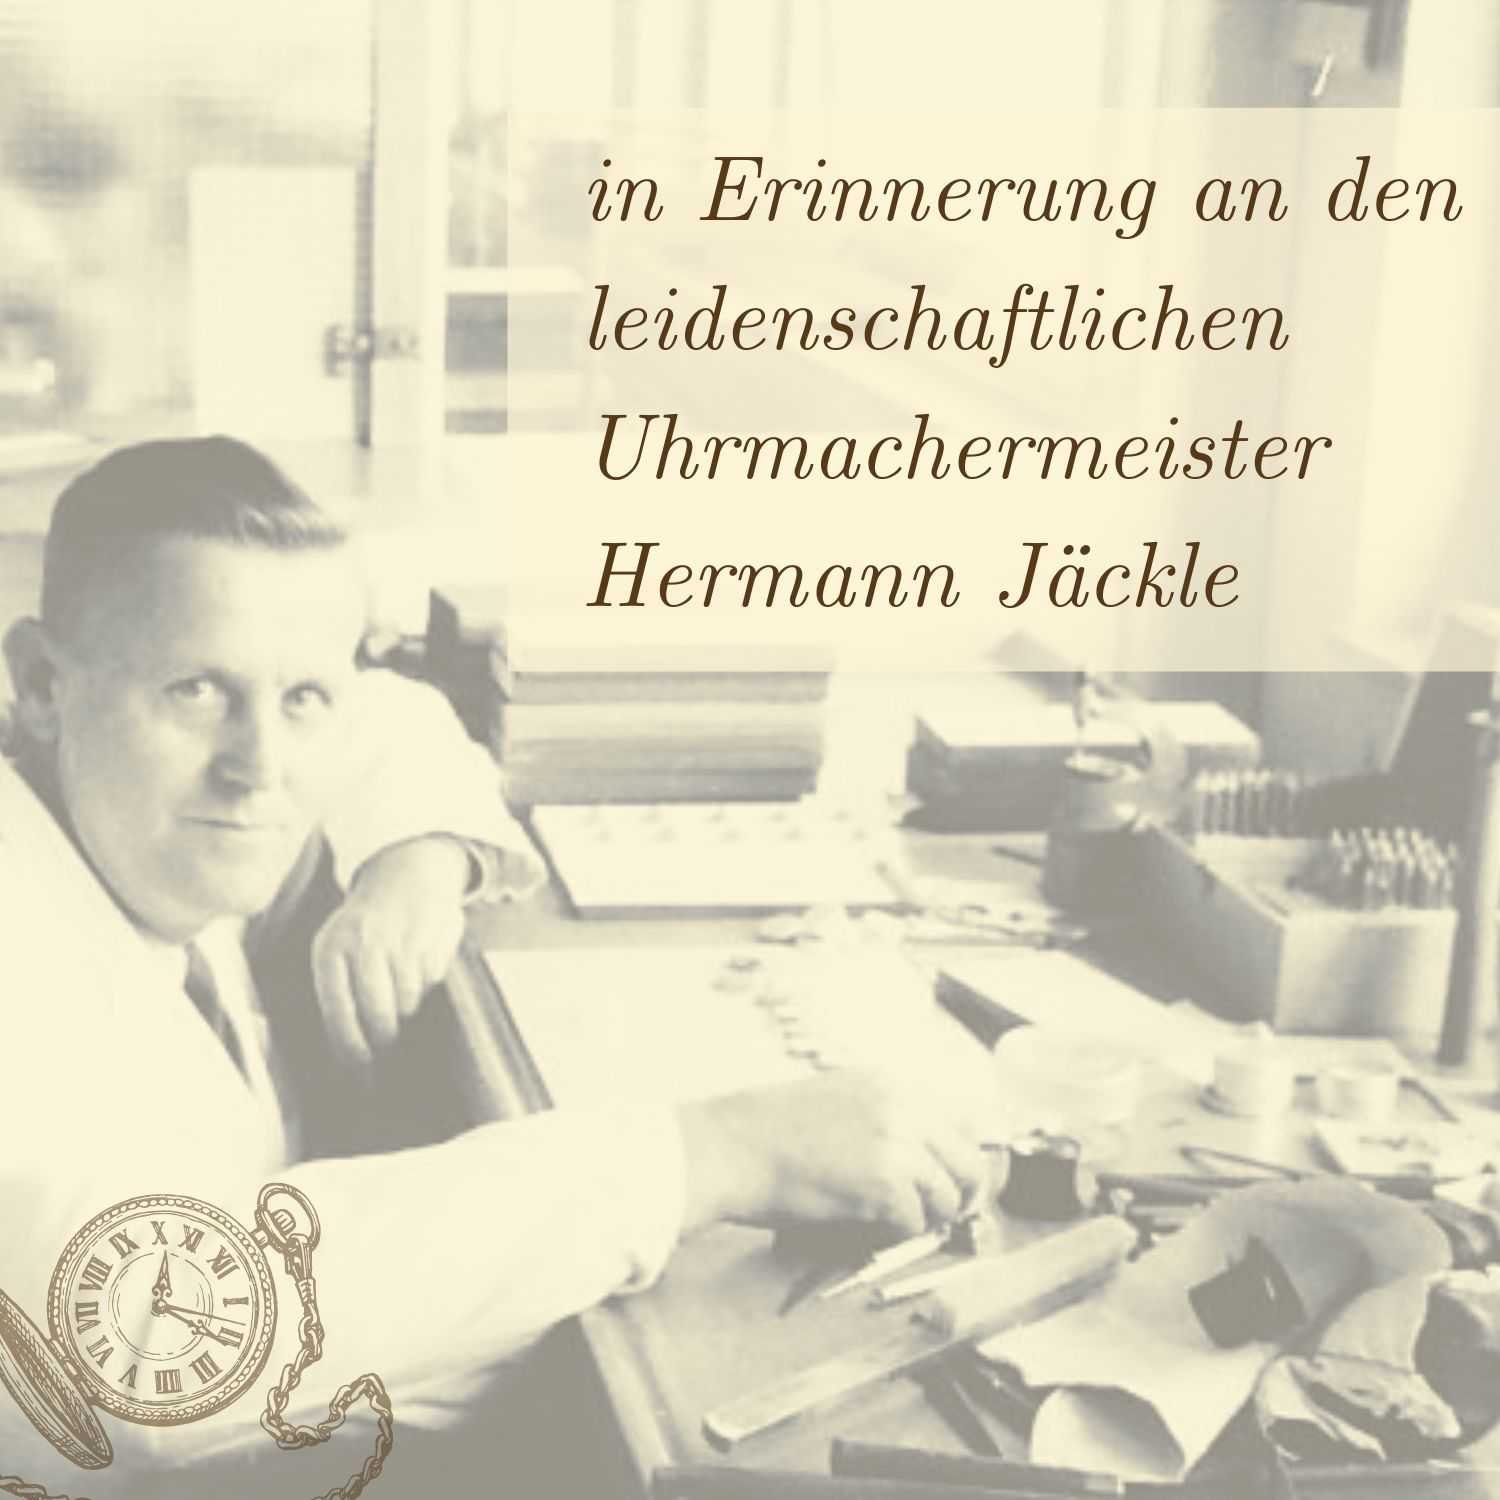 Hermann Jäckle und Reiseetui) Berlin Taschenuhr gelb (inklusive Kette Quarz